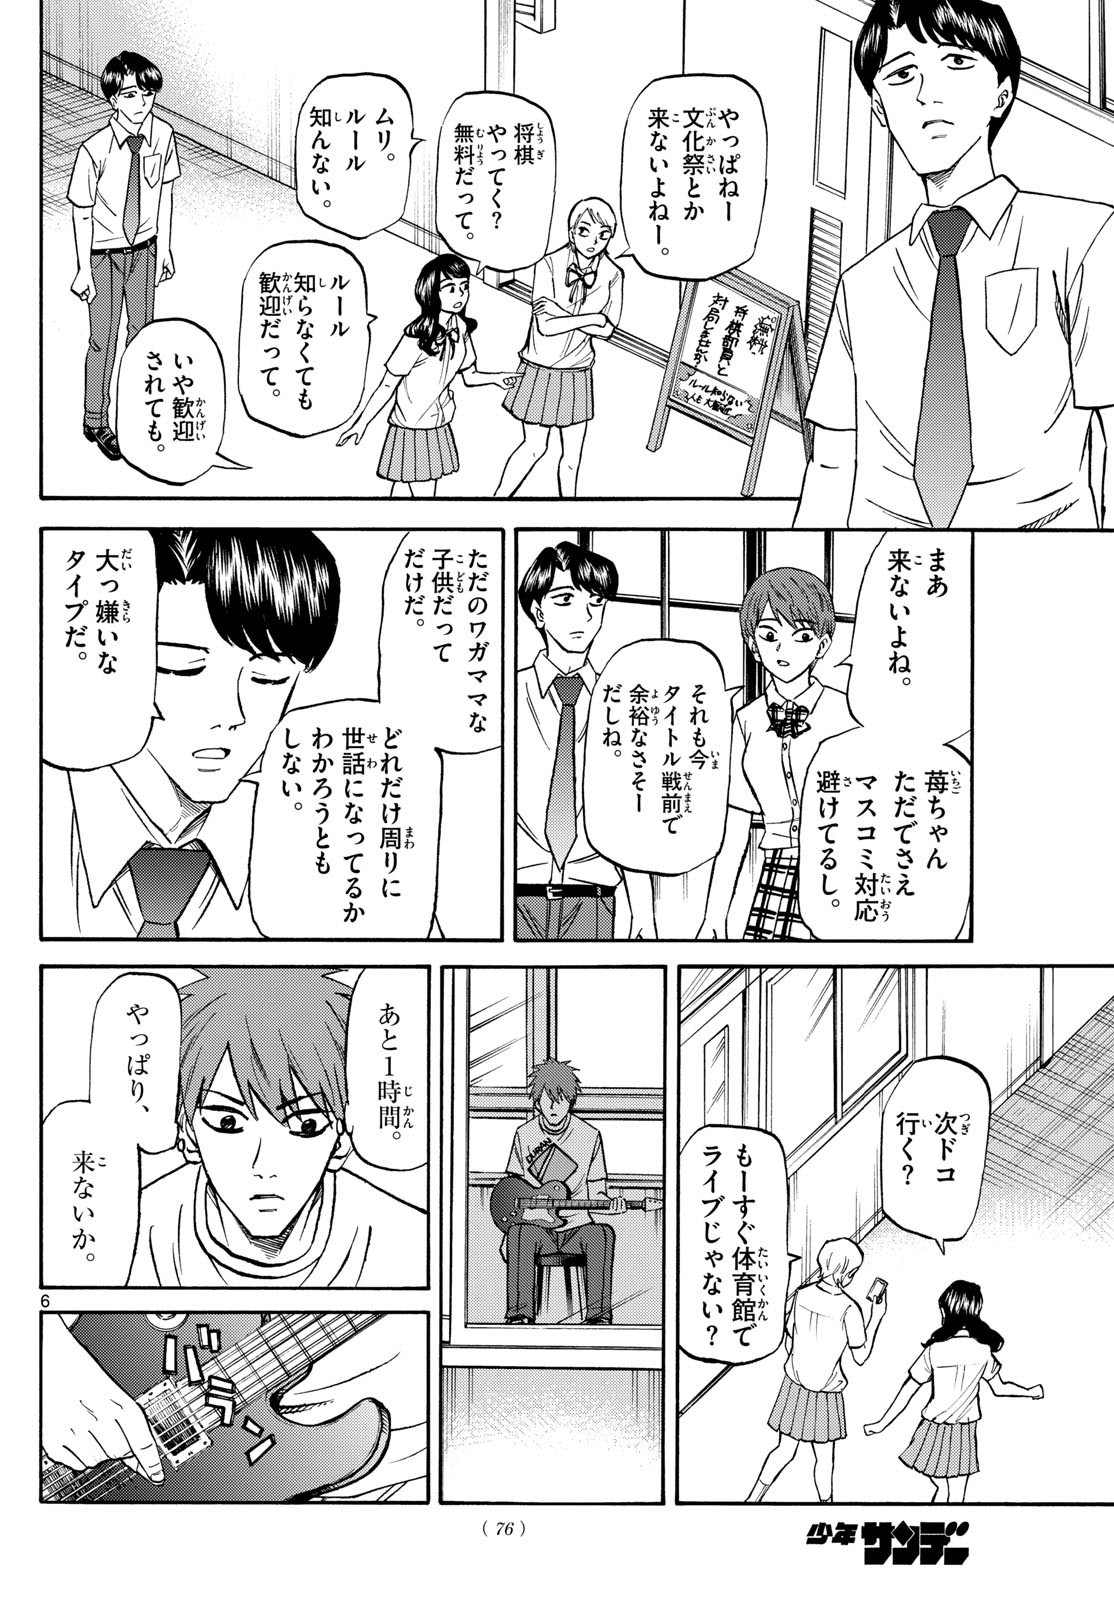 Ryu-to-Ichigo - Chapter 149 - Page 6